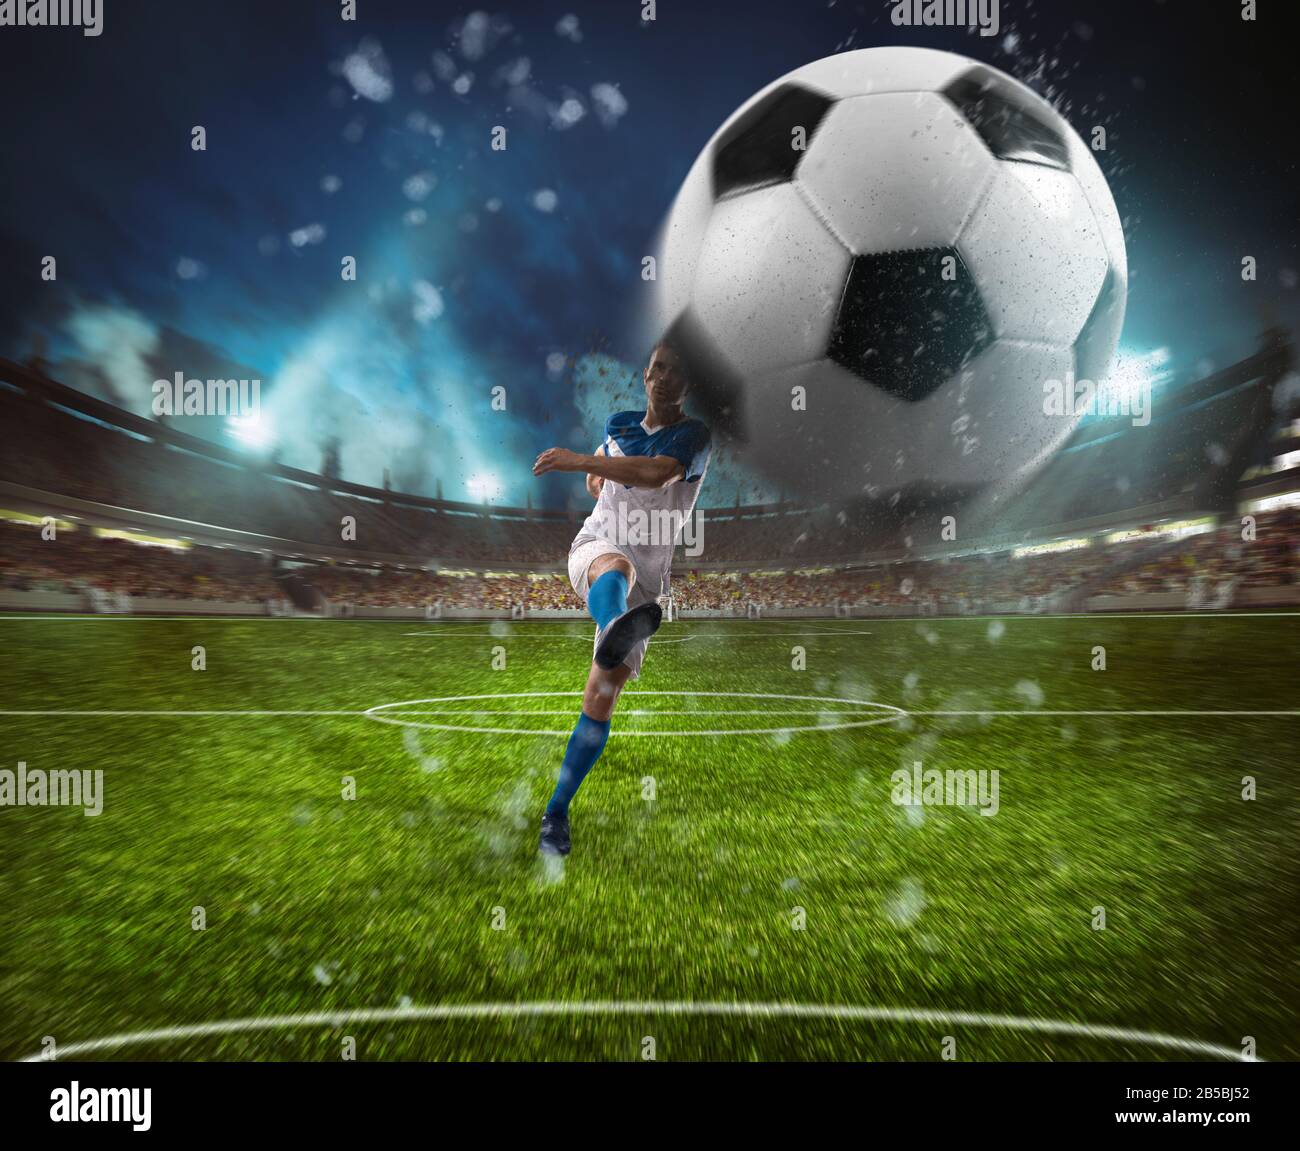 La scena calcistica di notte si abbina con il giocatore in una divisa bianca e blu che fa calciare la palla con il potere Foto Stock